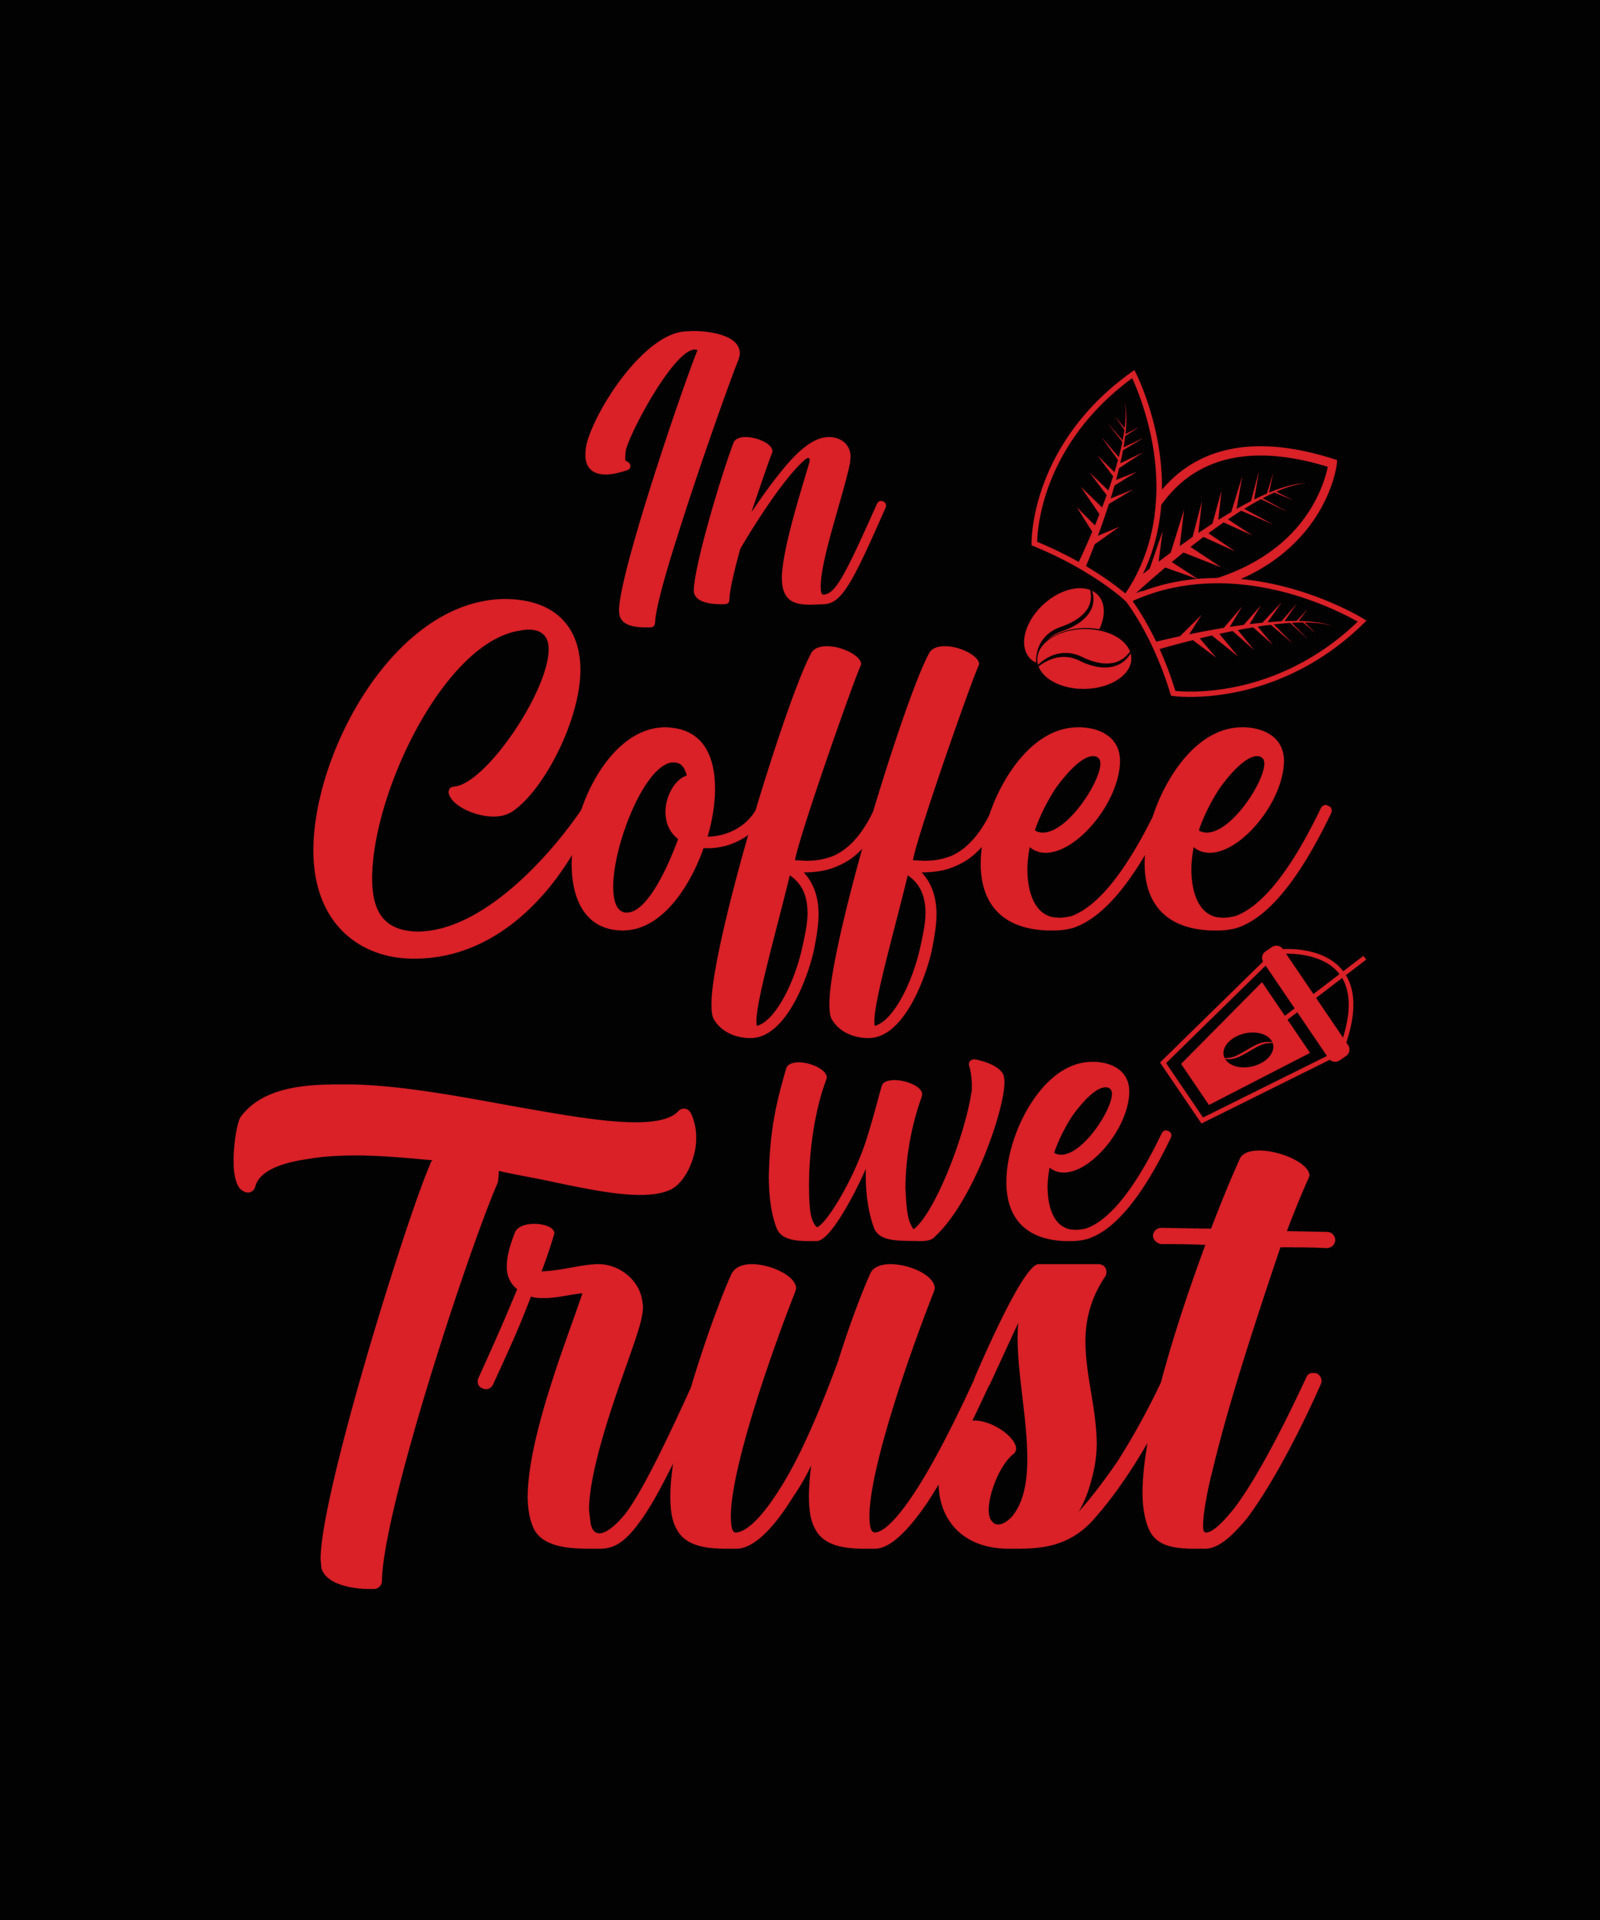 Crimineel Productie Laatste in coffee we trust lettering quote for t-shirt design 6435649 Vector Art at  Vecteezy